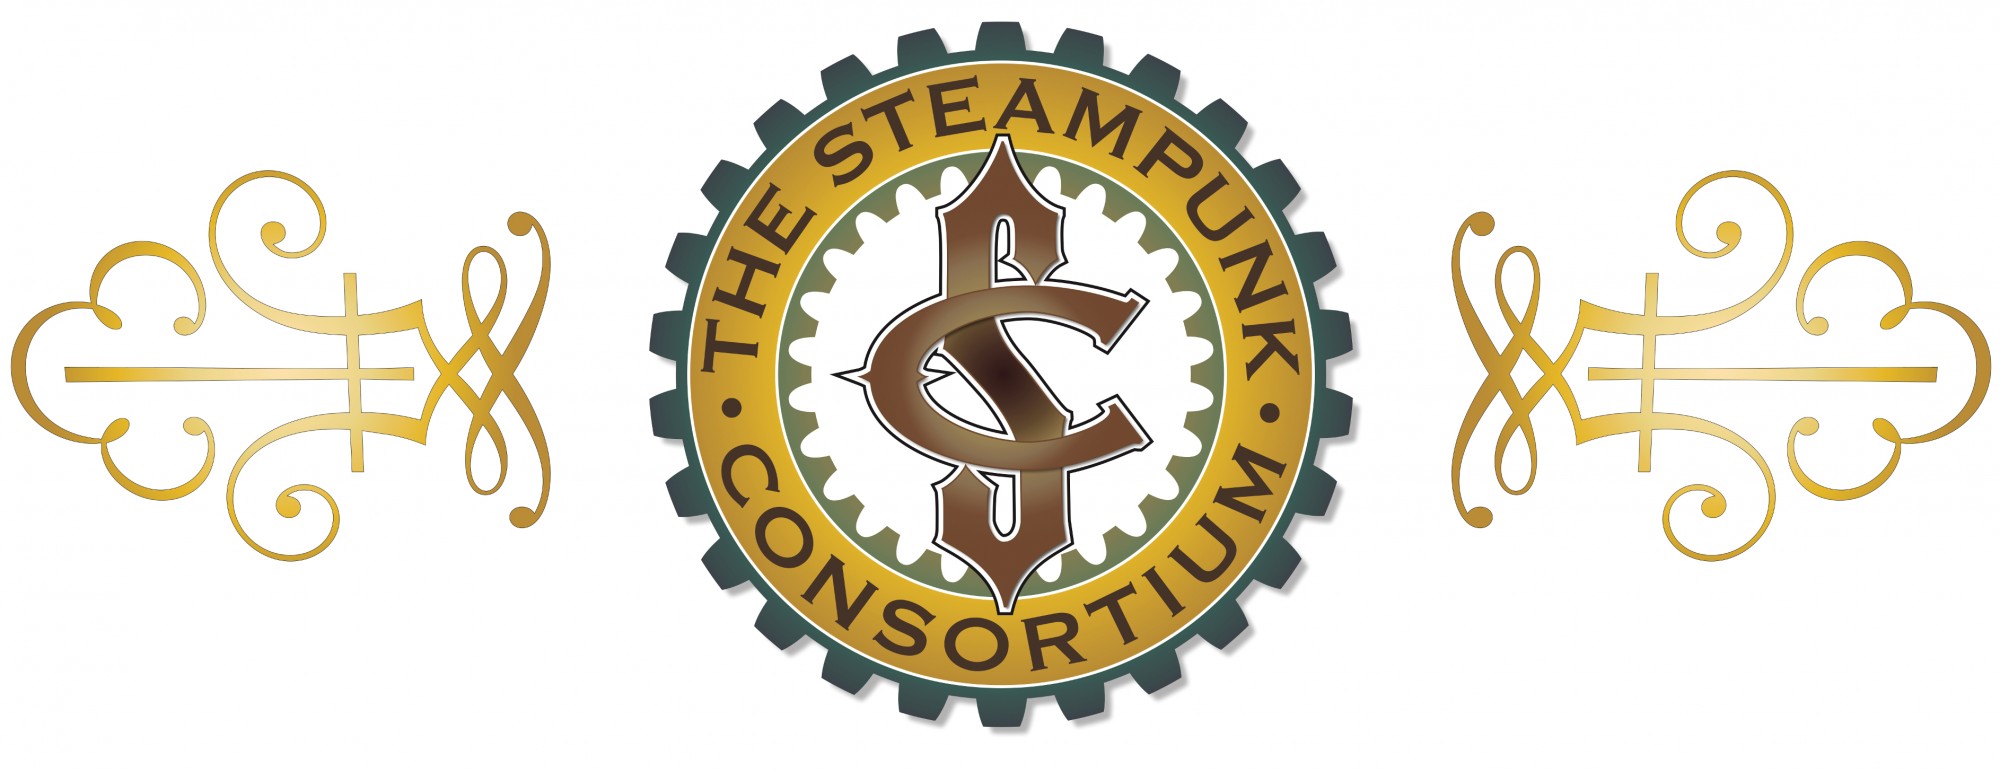 Steampunk  Eventbrite